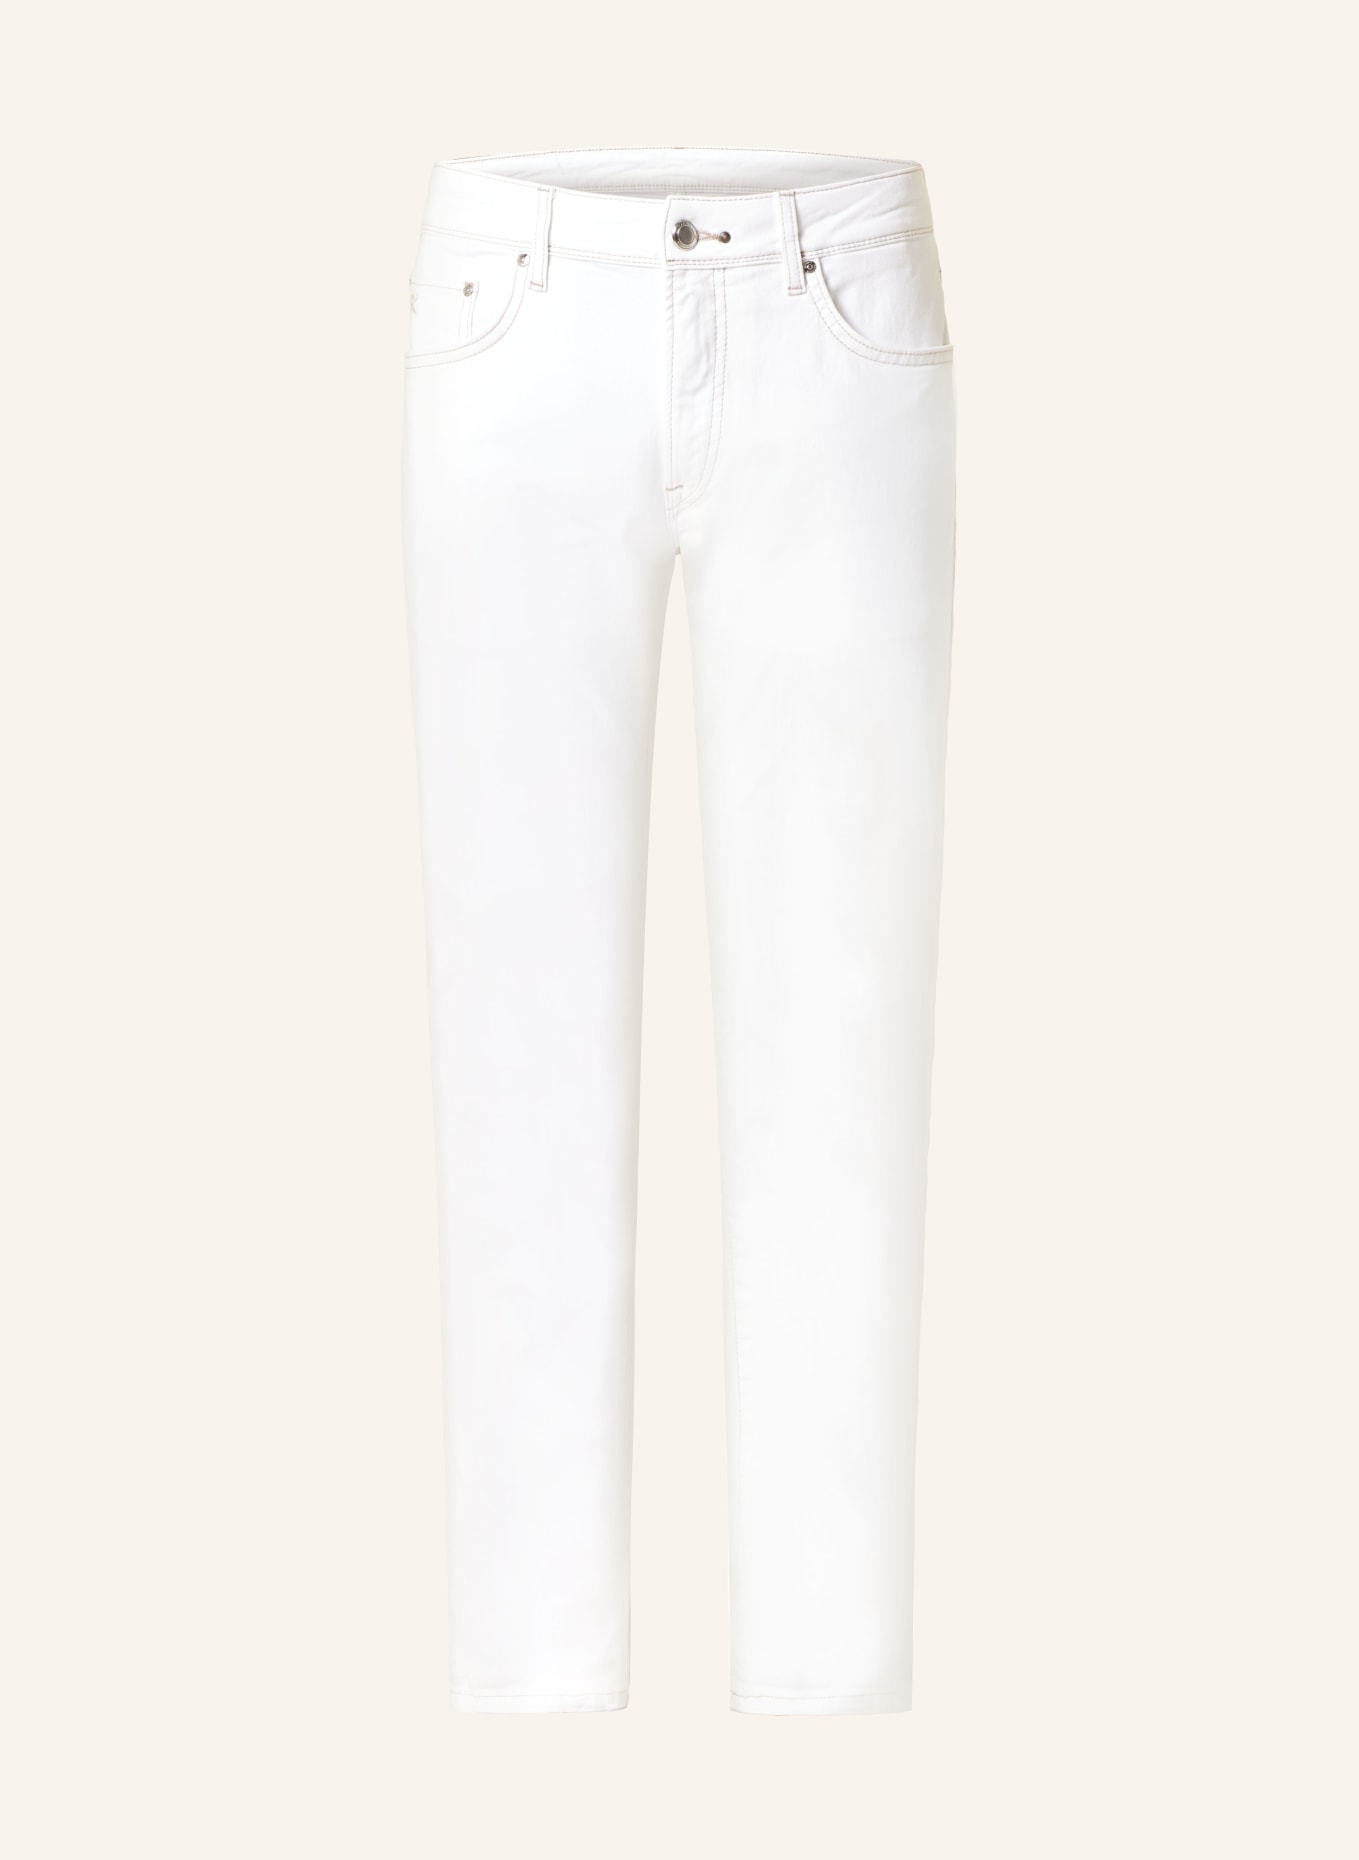 HACKETT LONDON Jeans Slim Fit, Farbe: 814 ECRU (Bild 1)